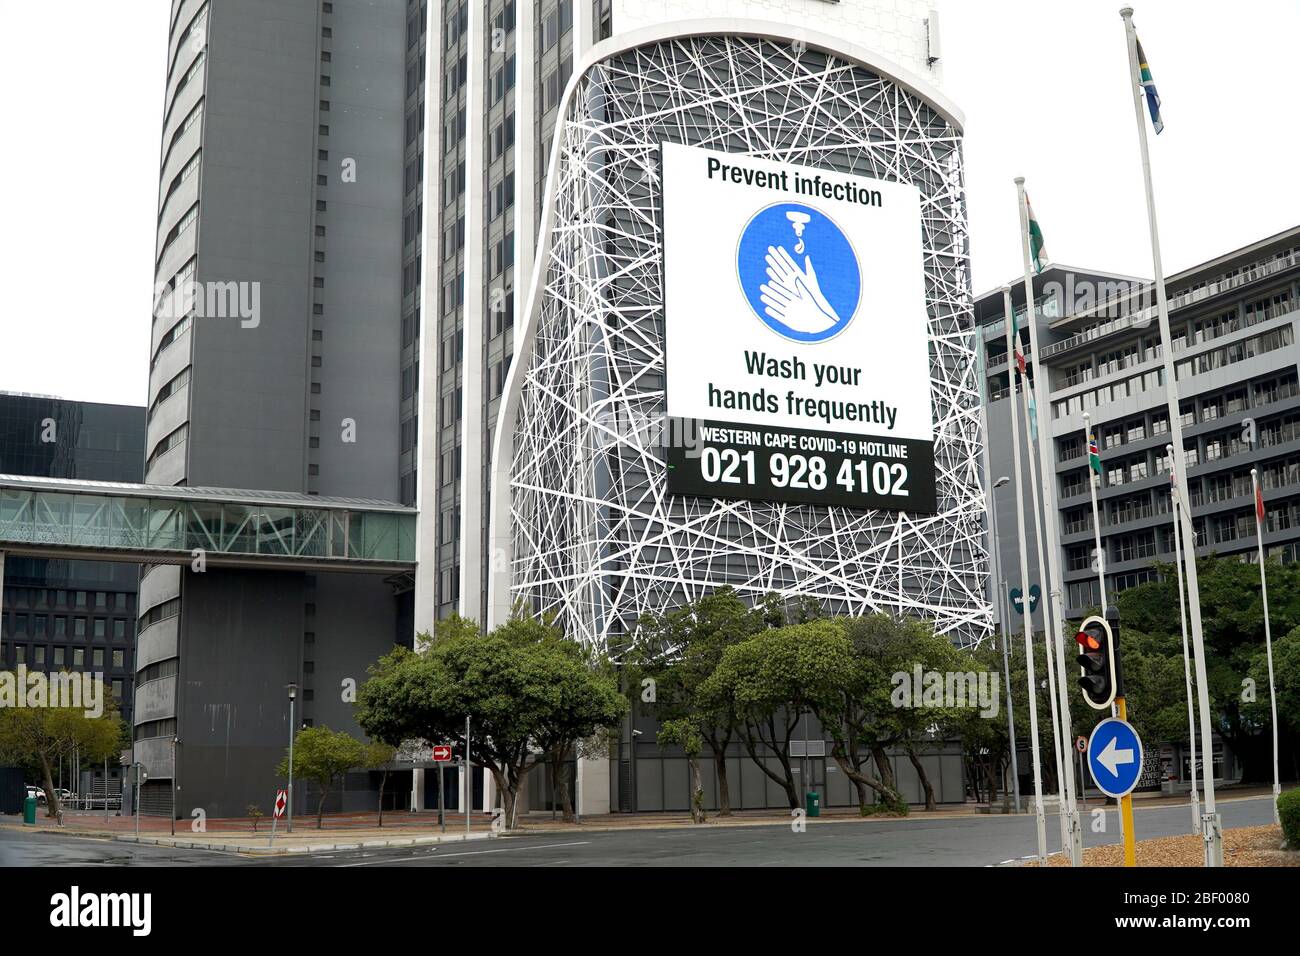 Ciudad del Cabo, Sudáfrica - 16 de abril de 2020 : letrero de lavado de manos en un buikding en un edificio de oficinas en Ciudad del Cabo, Sudáfrica Foto de stock